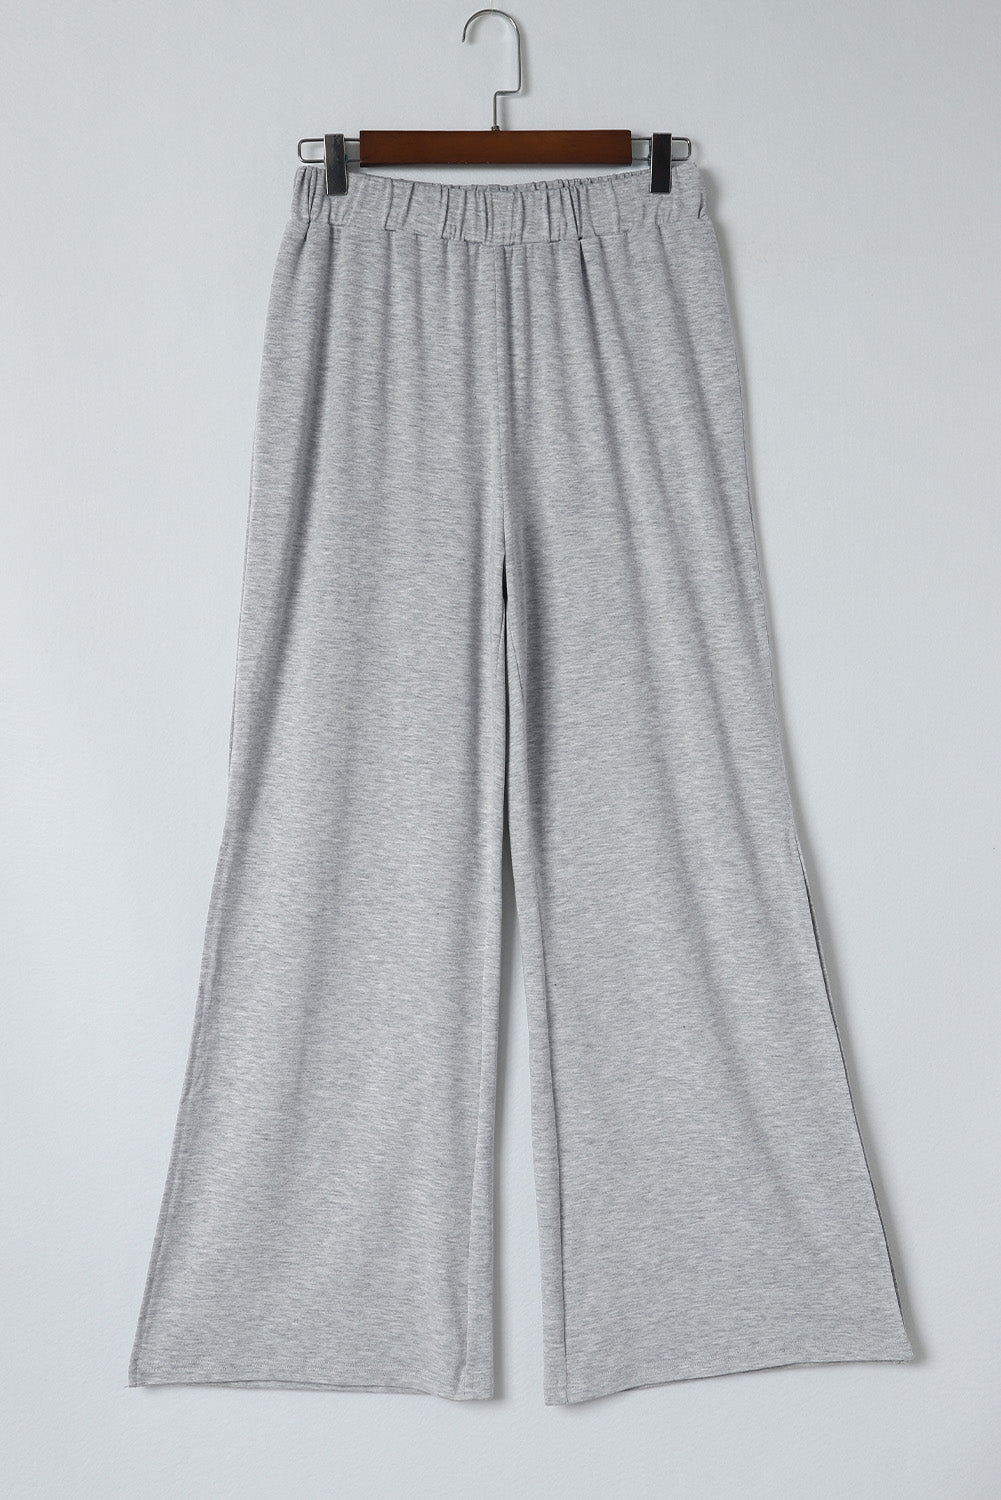 Pantalon taille haute gris à fentes latérales et jambes larges